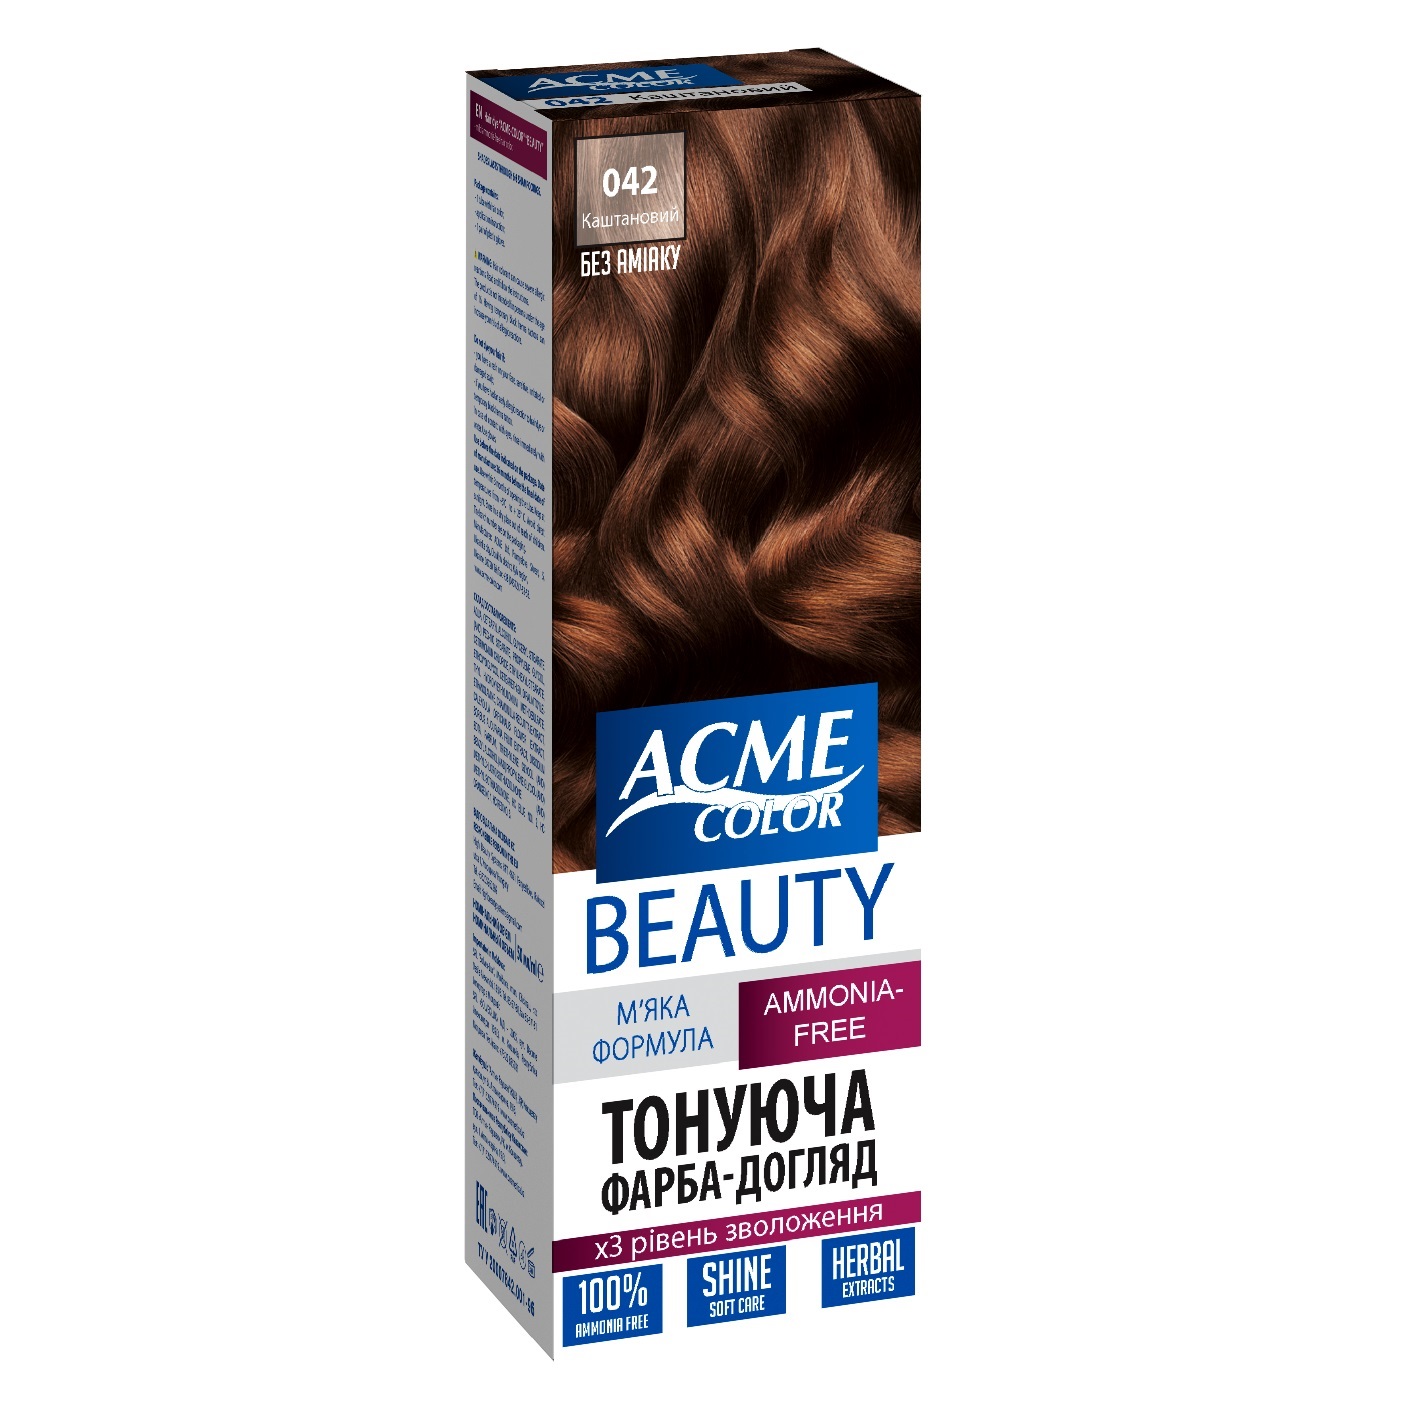 Гель-фарба для волосся Acme-color Beauty, відтінок 042 (Каштановий), 69 г - фото 1